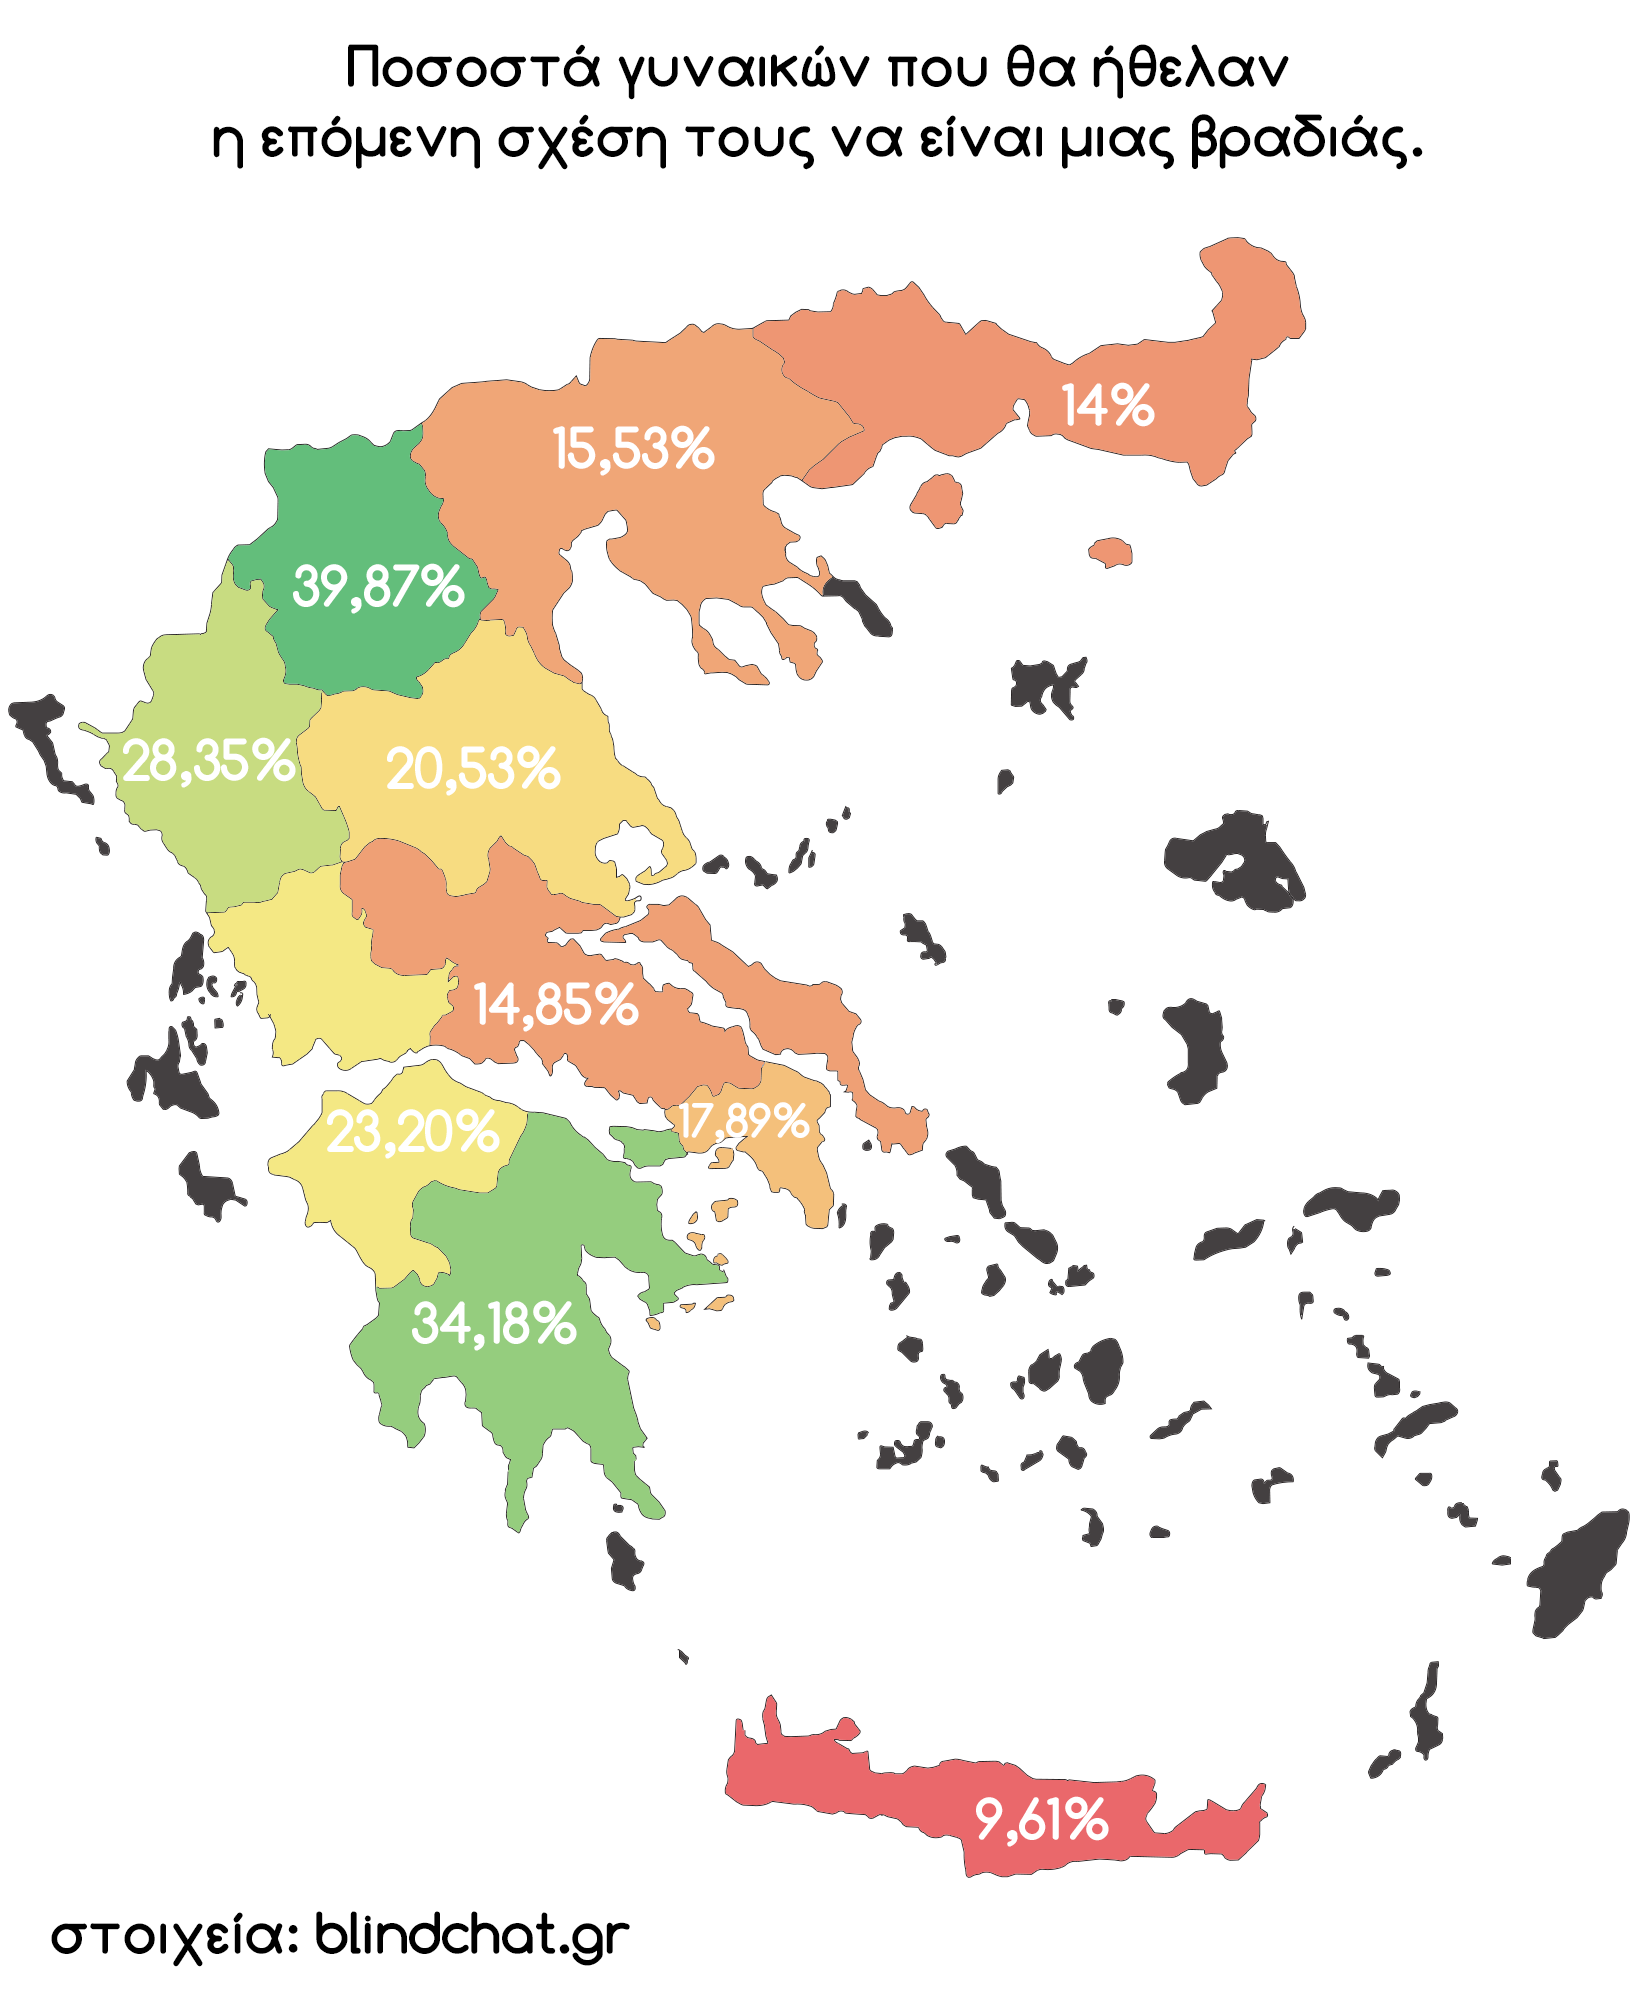 ΕΡΕΥΝΑ: Σε ποια πόλη της Ελλάδας είναι πιο επιρρεπείς στις σχέσεις μιας βραδιάς; - Φωτογραφία 2